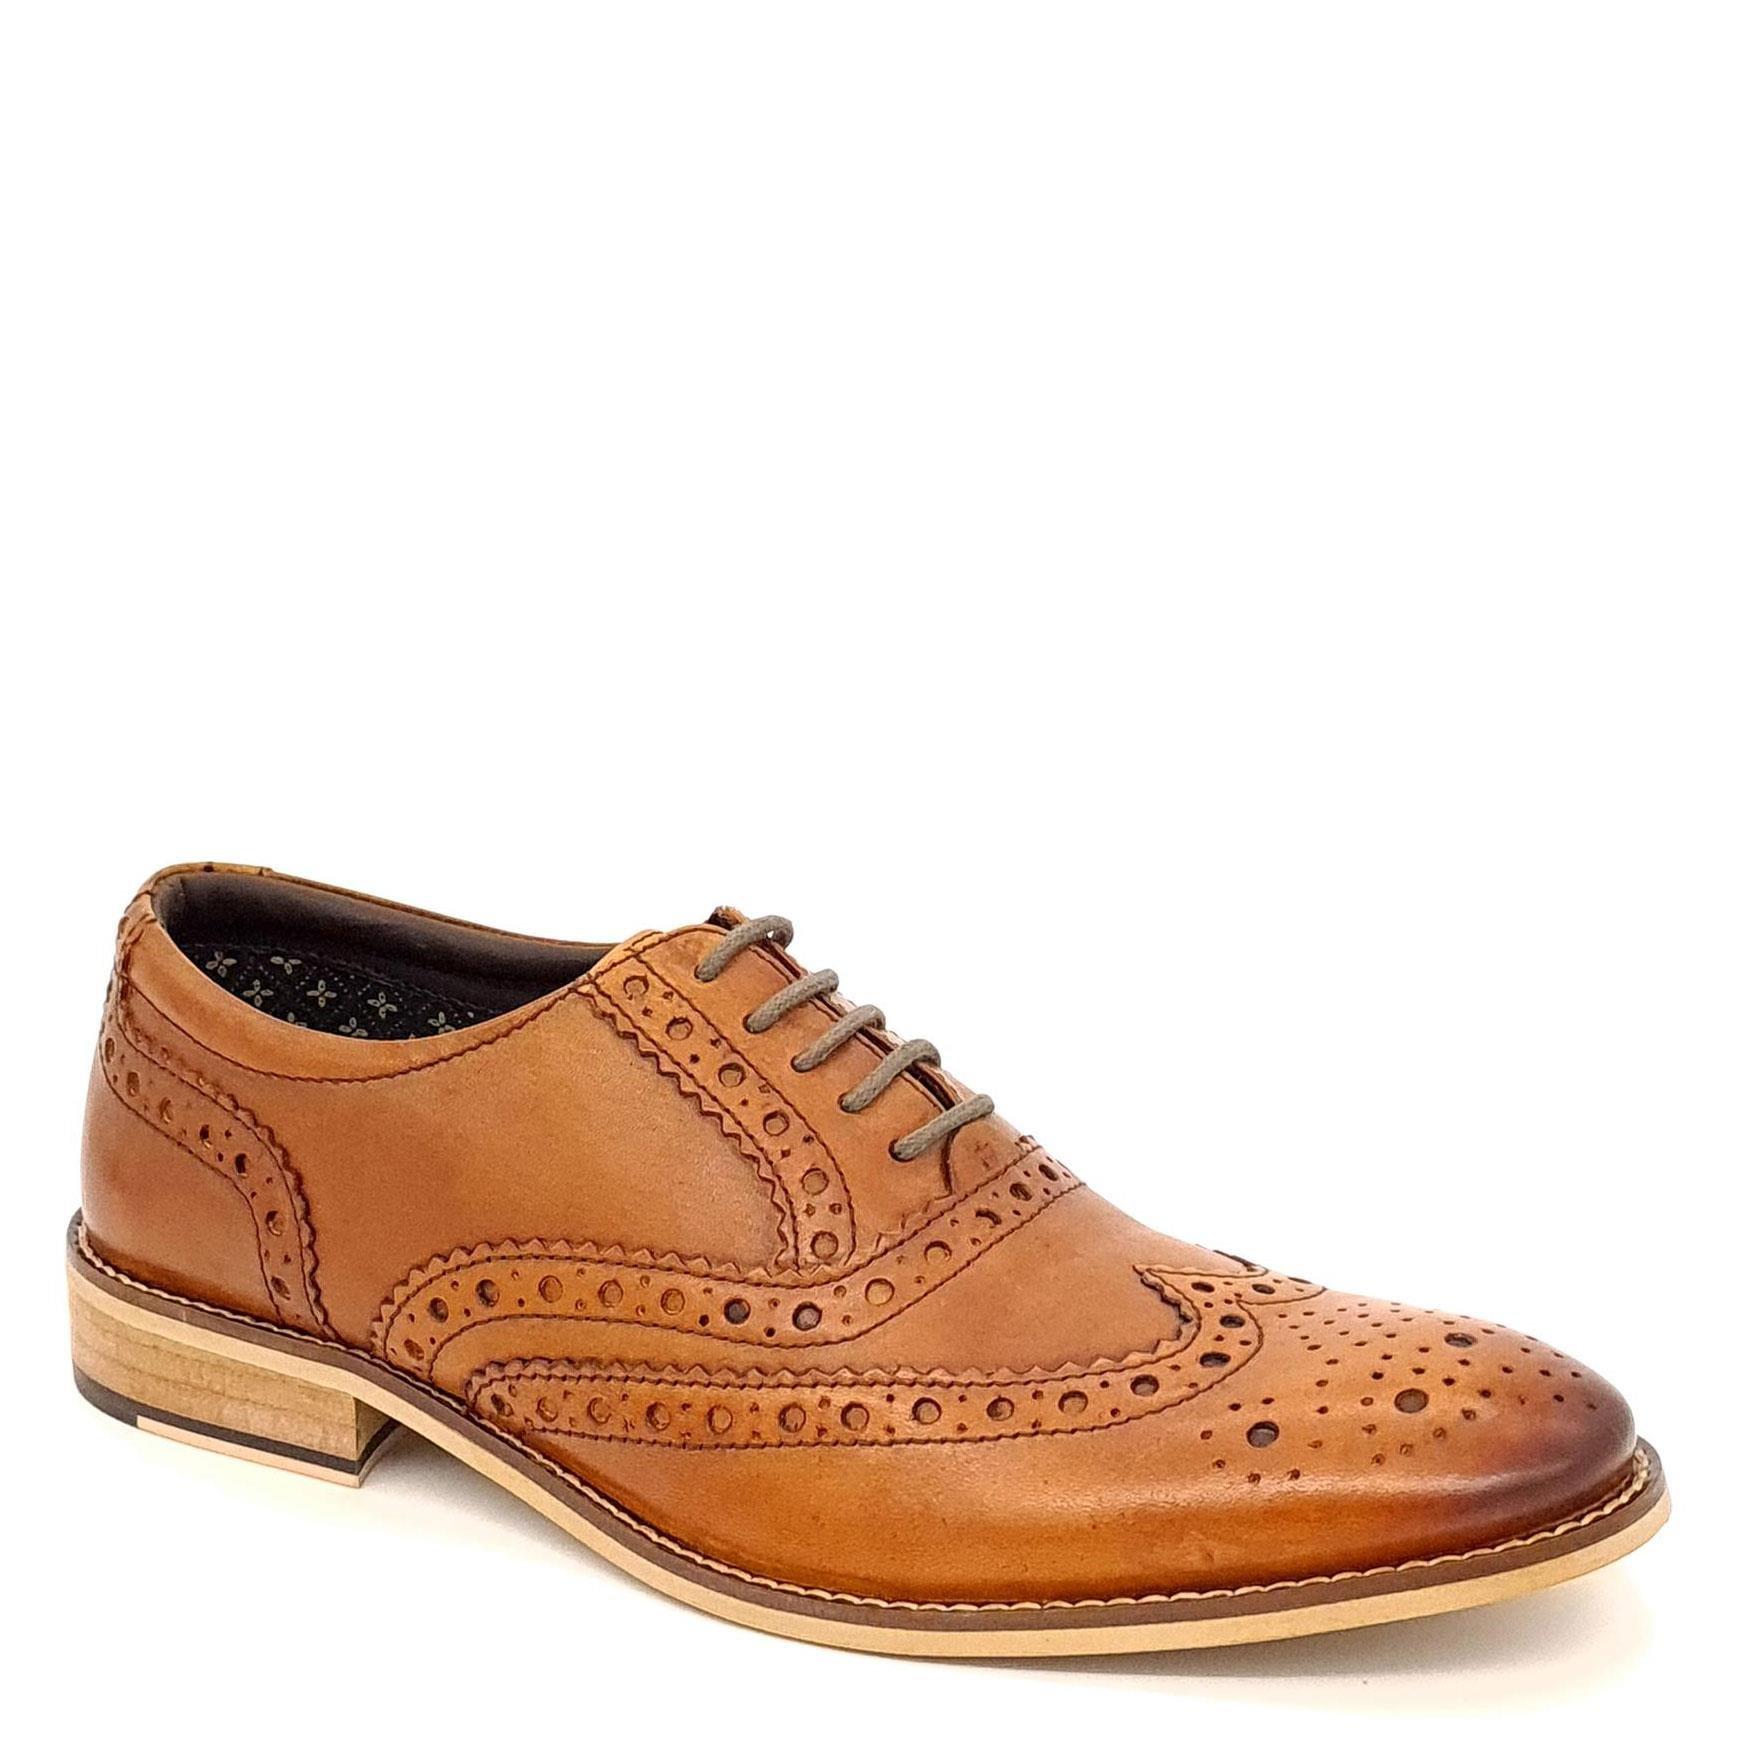 Кожаные туфли-броги Enfield Frank James, коричневый кожаные туфли дерби броги parade frank james коричневый